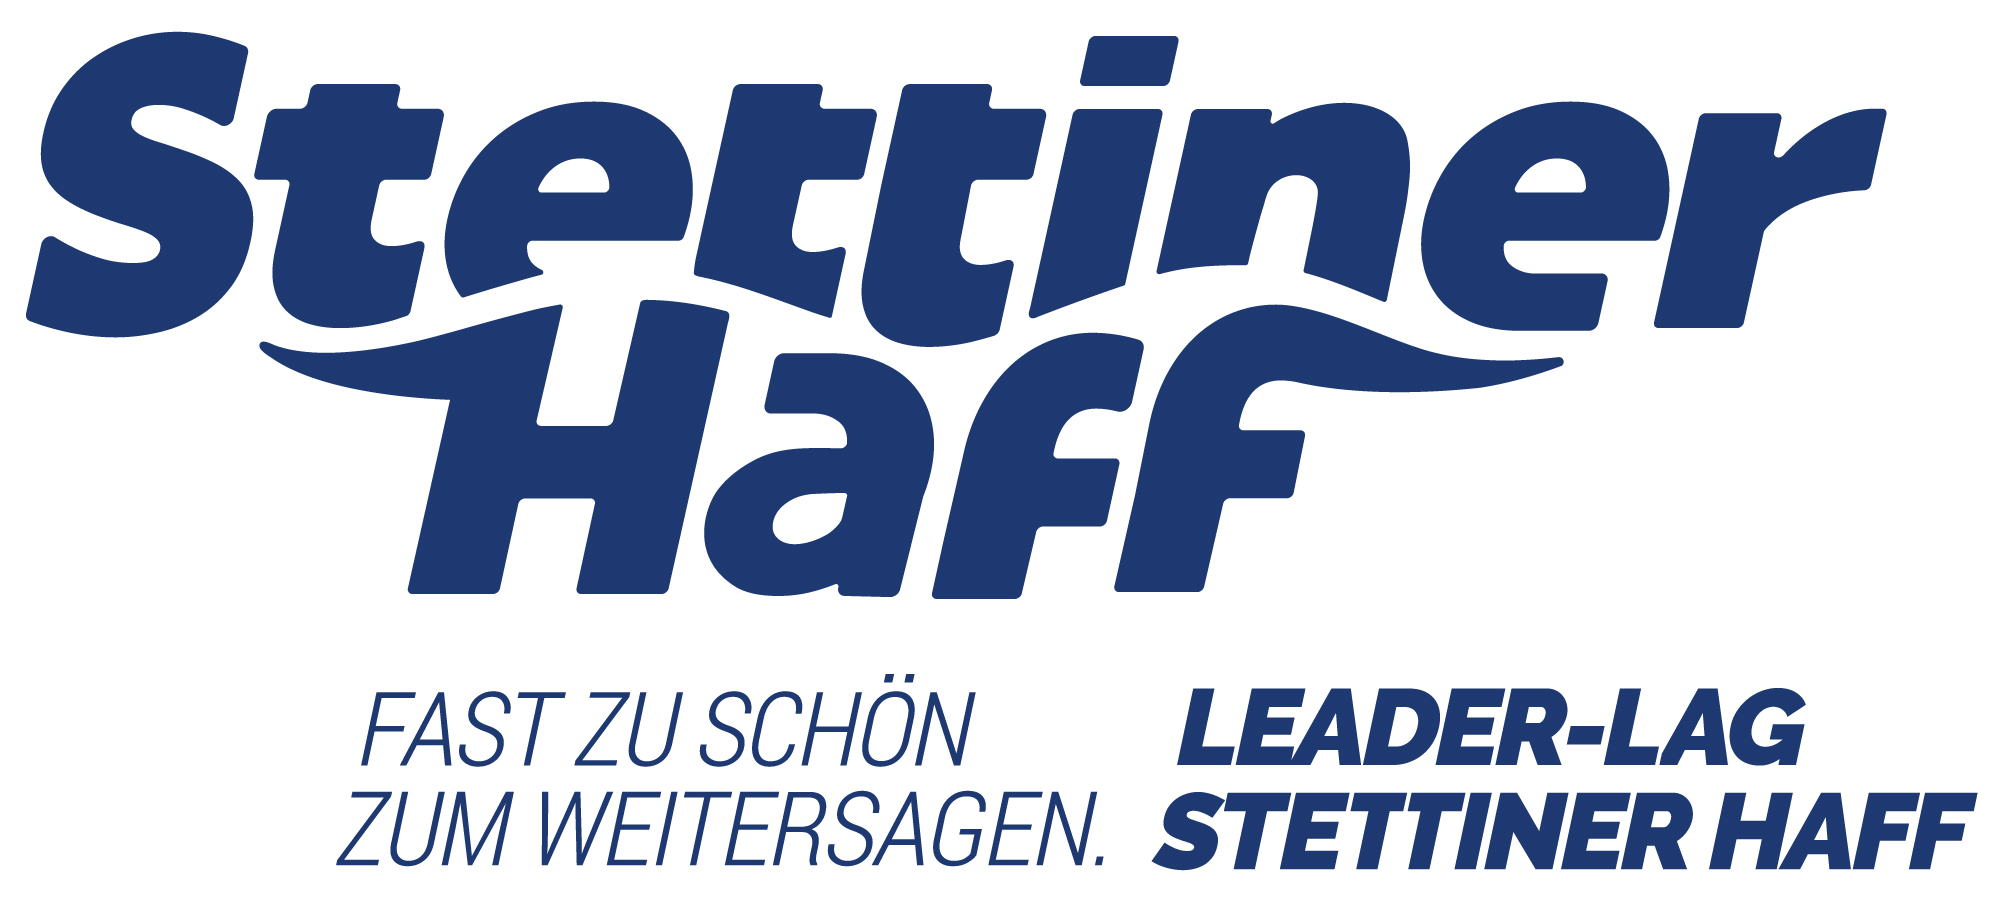 Logo Stettiner Haff mit Claim